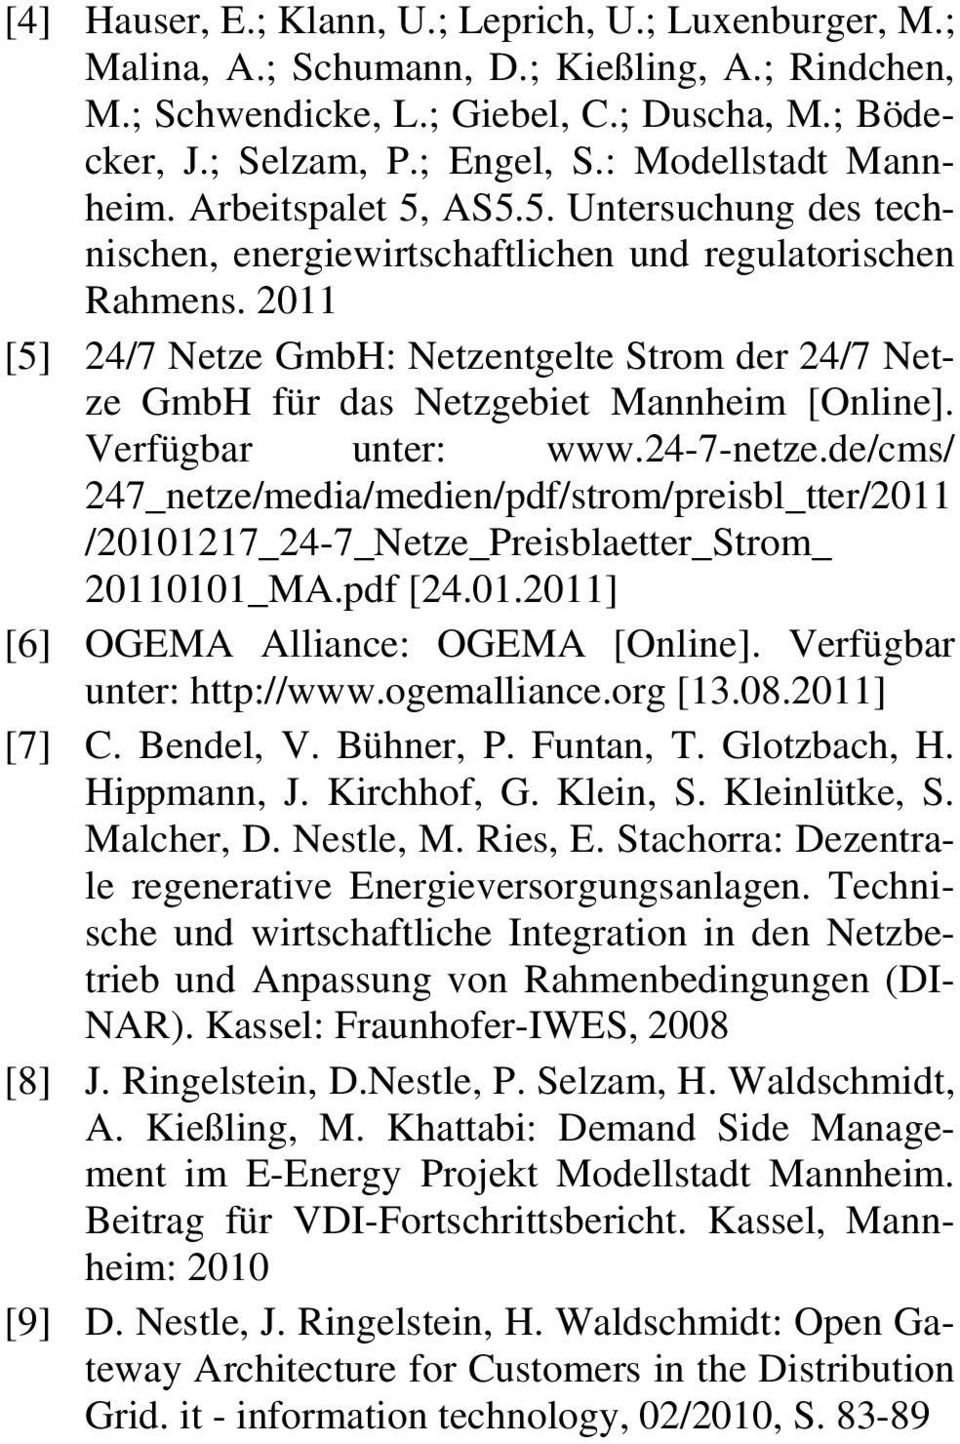 2011 [5] 24/7 Netze GmbH: Netzentgelte Strom der 24/7 Netze GmbH für das Netzgebiet Mannheim [Online]. Verfügbar unter: www.24-7-netze.